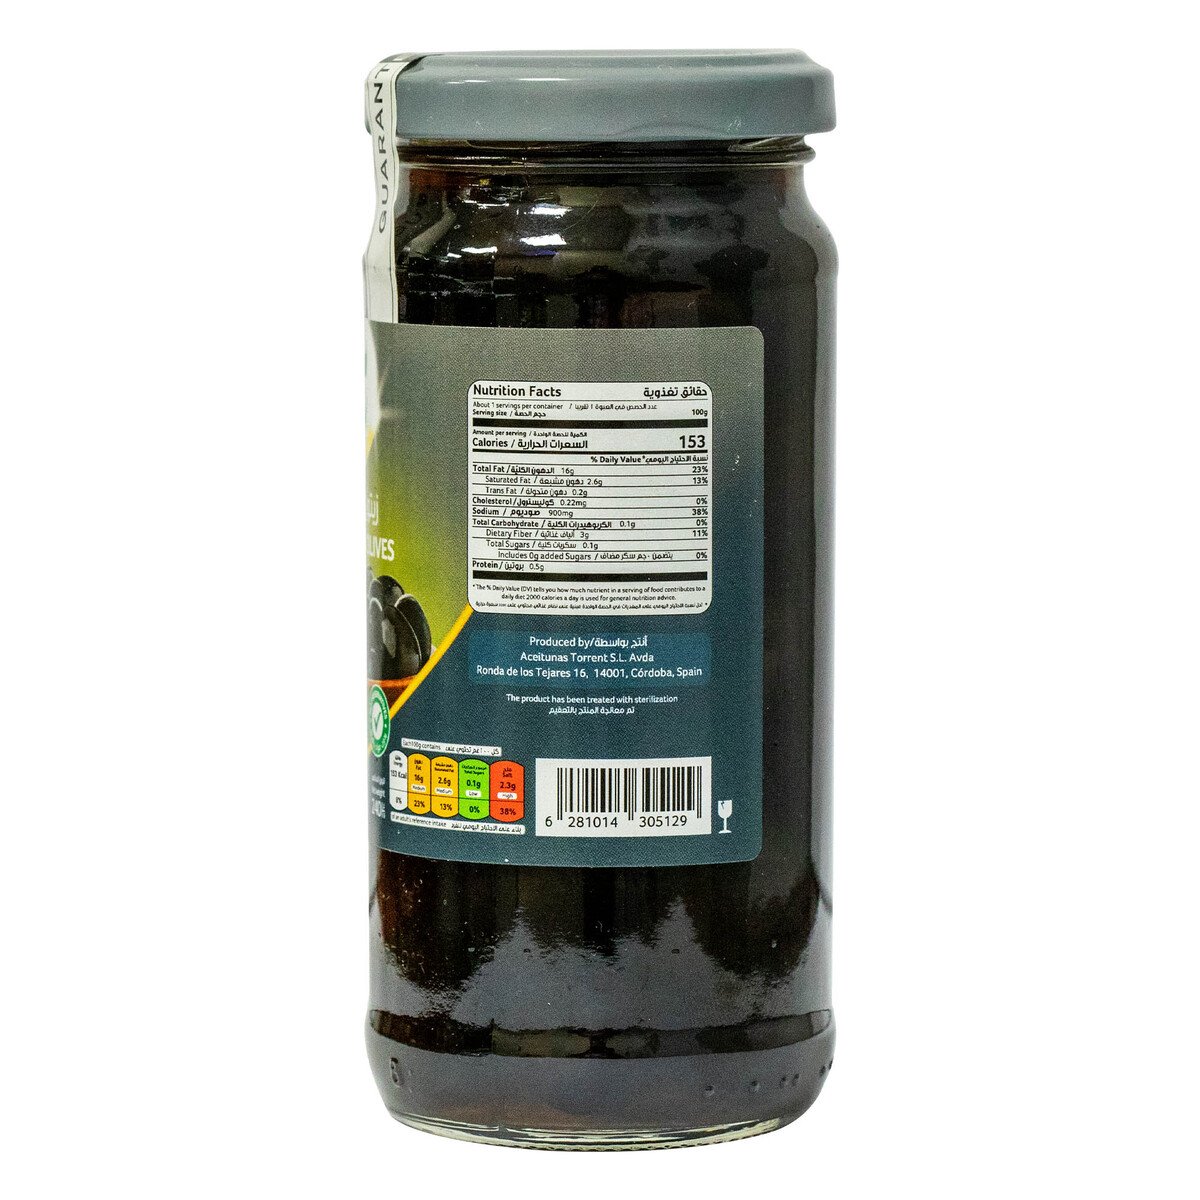 Goody Whole Black Olives 240 g